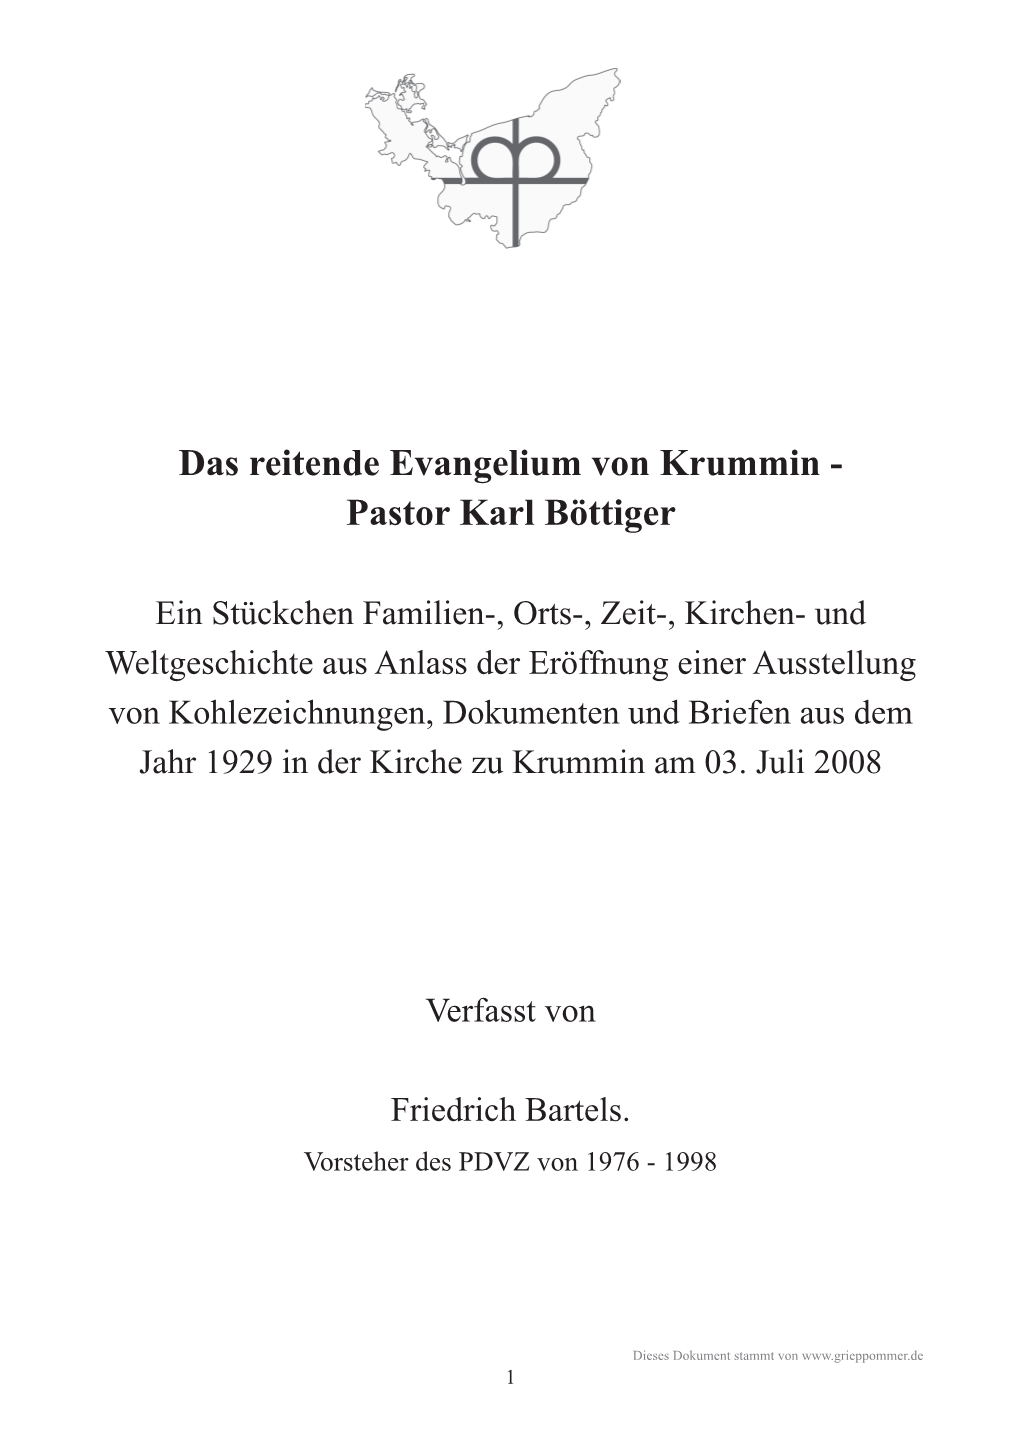 Das Reitende Evangelium Von Krummin - Pastor Karl Böttiger